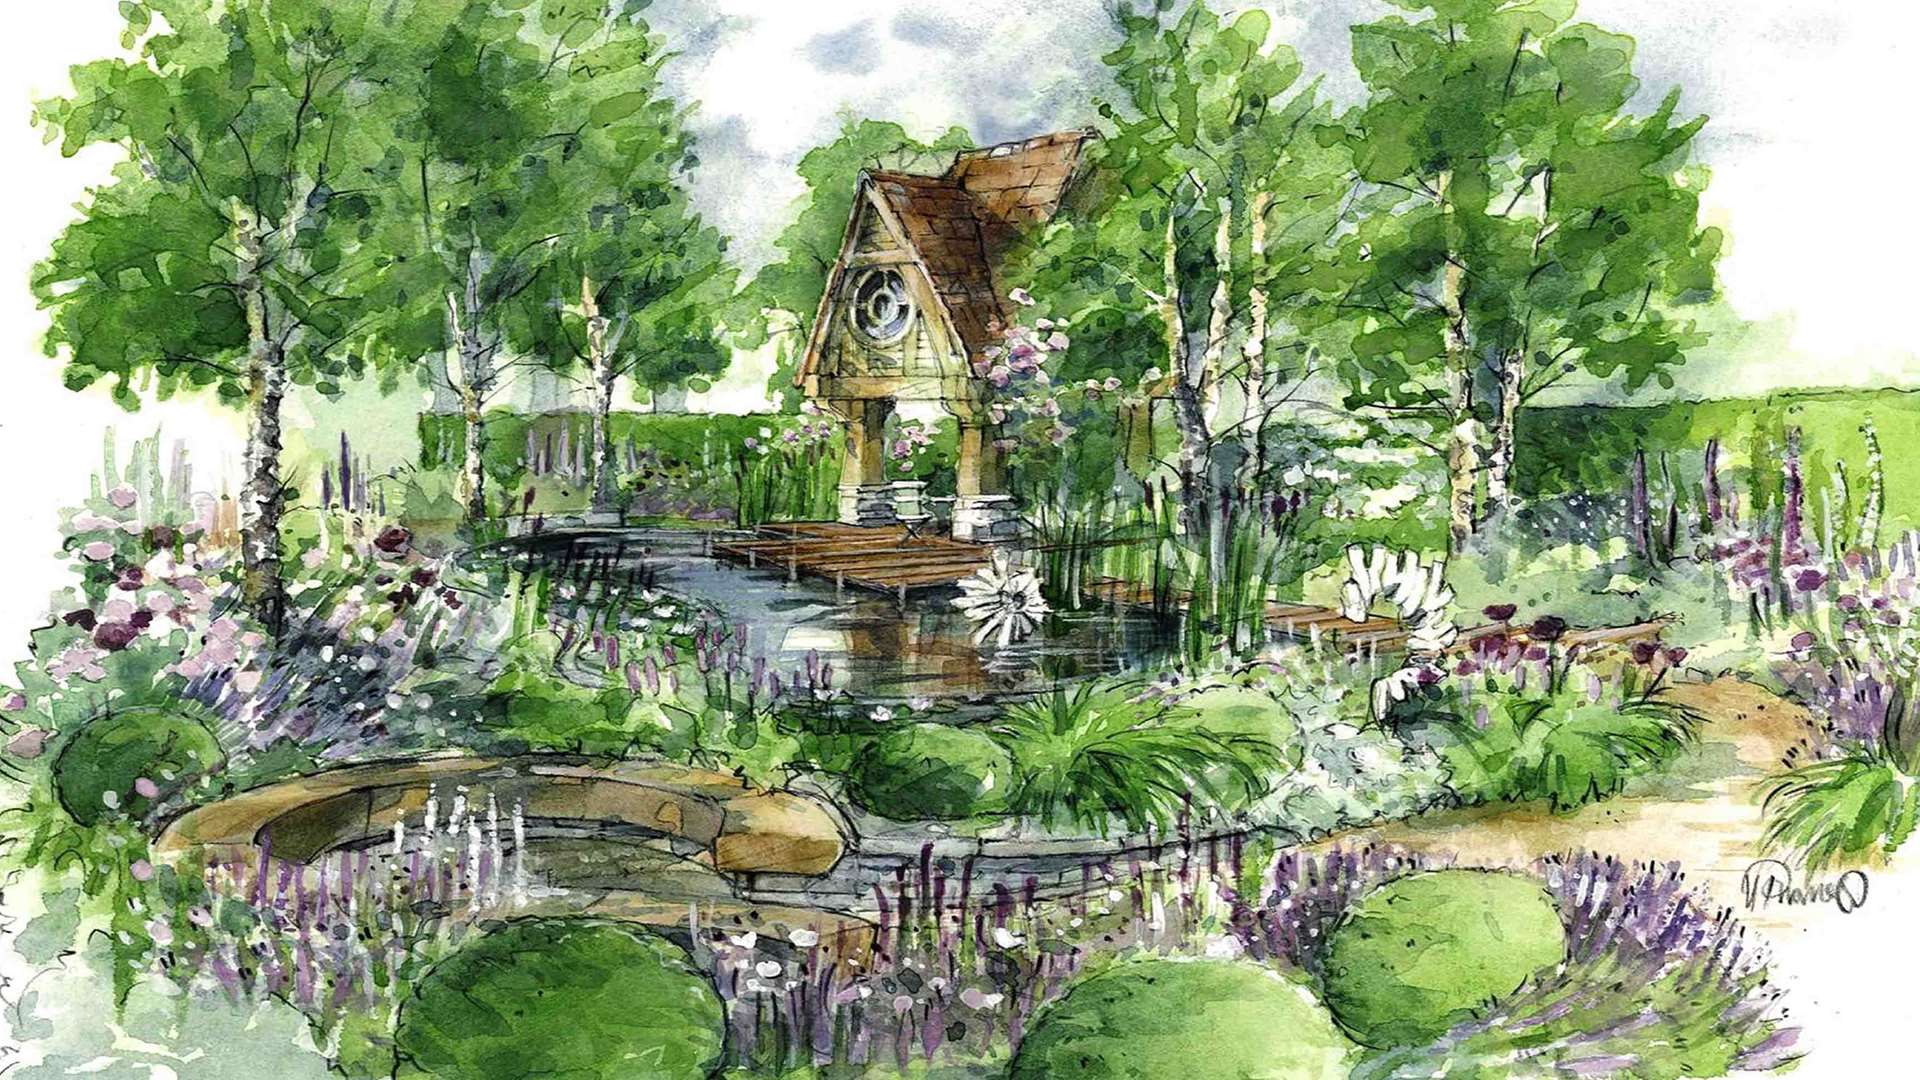 The M&G garden for Chelsea, designed by Jo Thompson